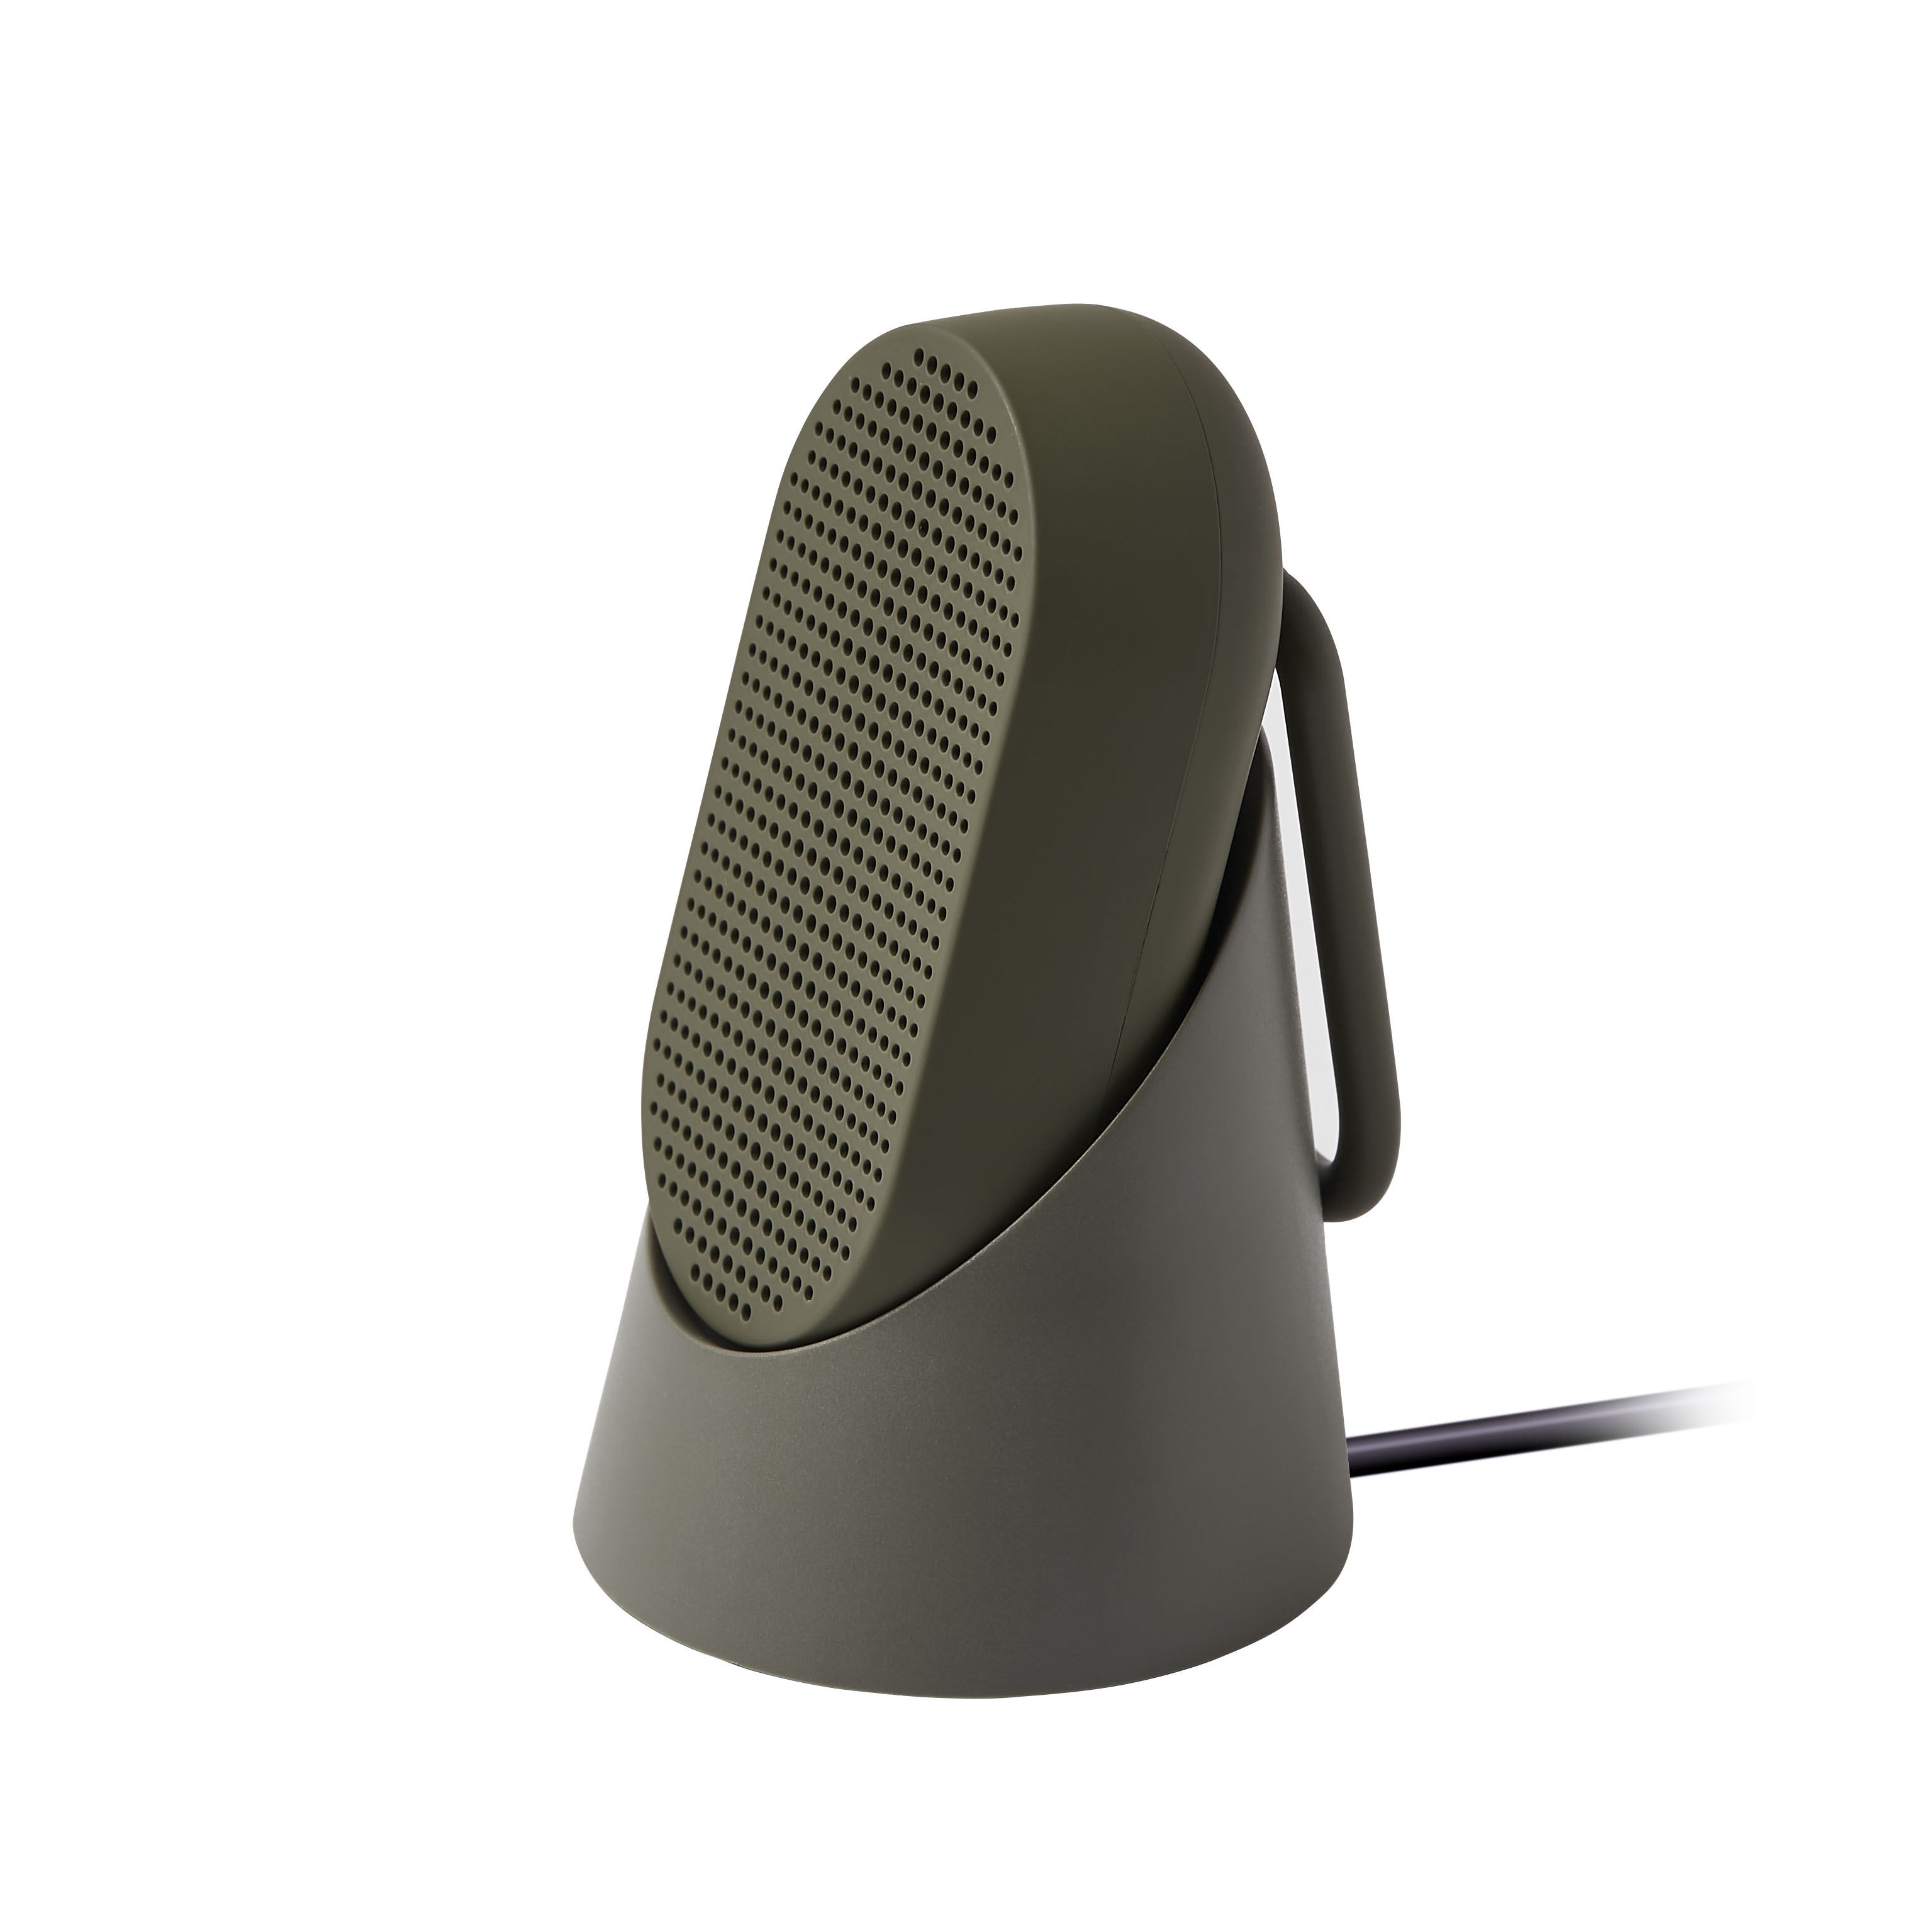 Enceinte Bluetooth Mino T - 5W / Etanche - Mousqueton intégré / Station d'accueil - Lexon vert en matière plastique